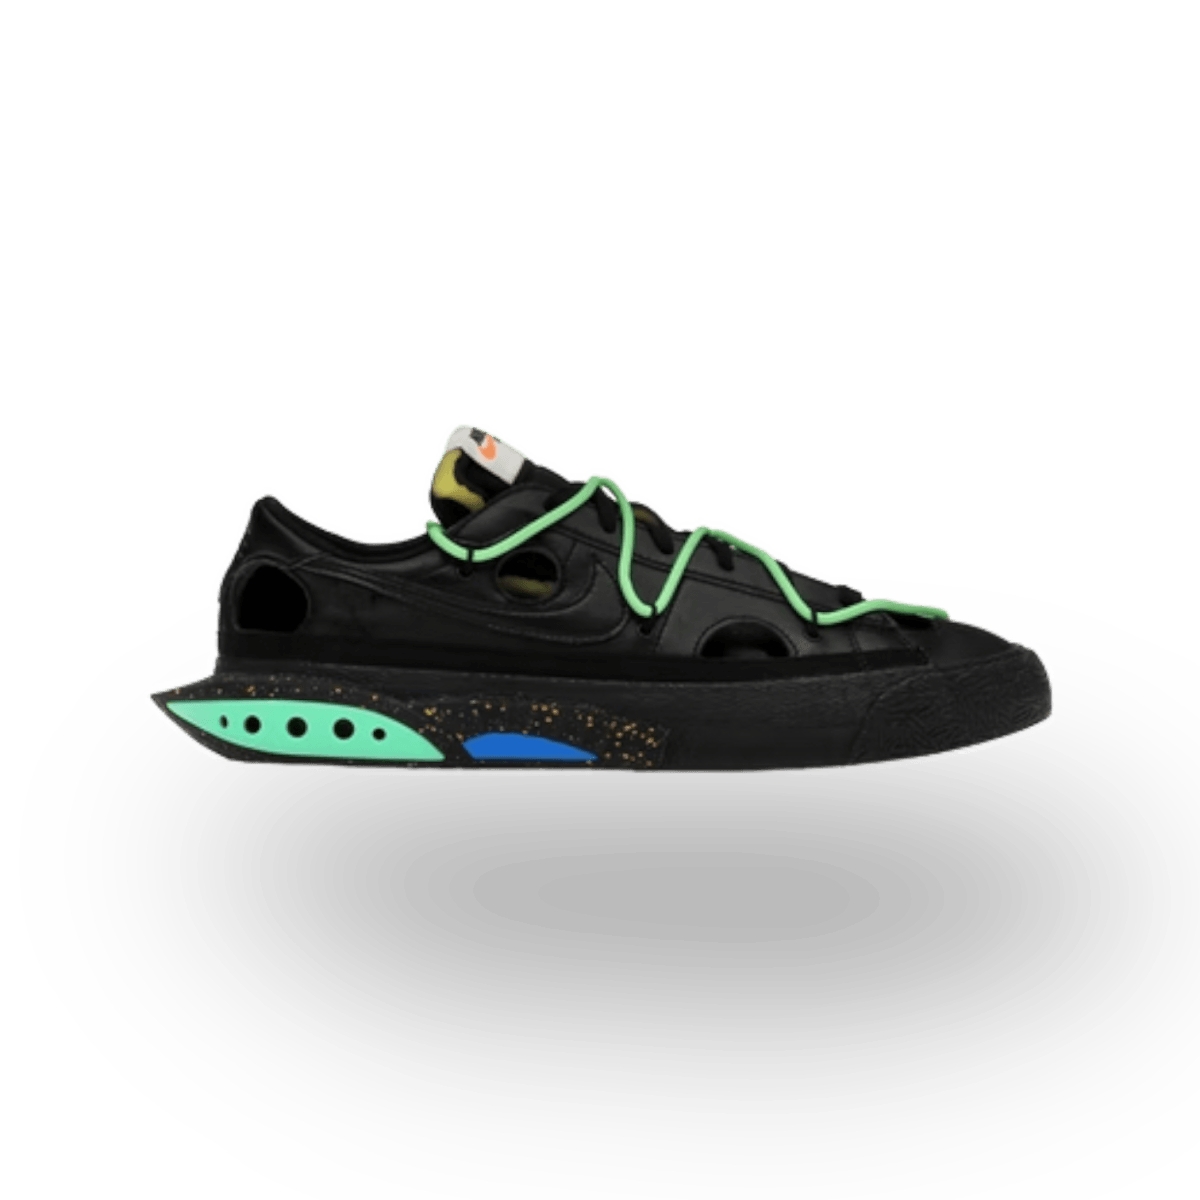 Nike Blazer Low Off-White Black Electro Green - Low Sneaker - Nike - Jawns on Fire - sneakers